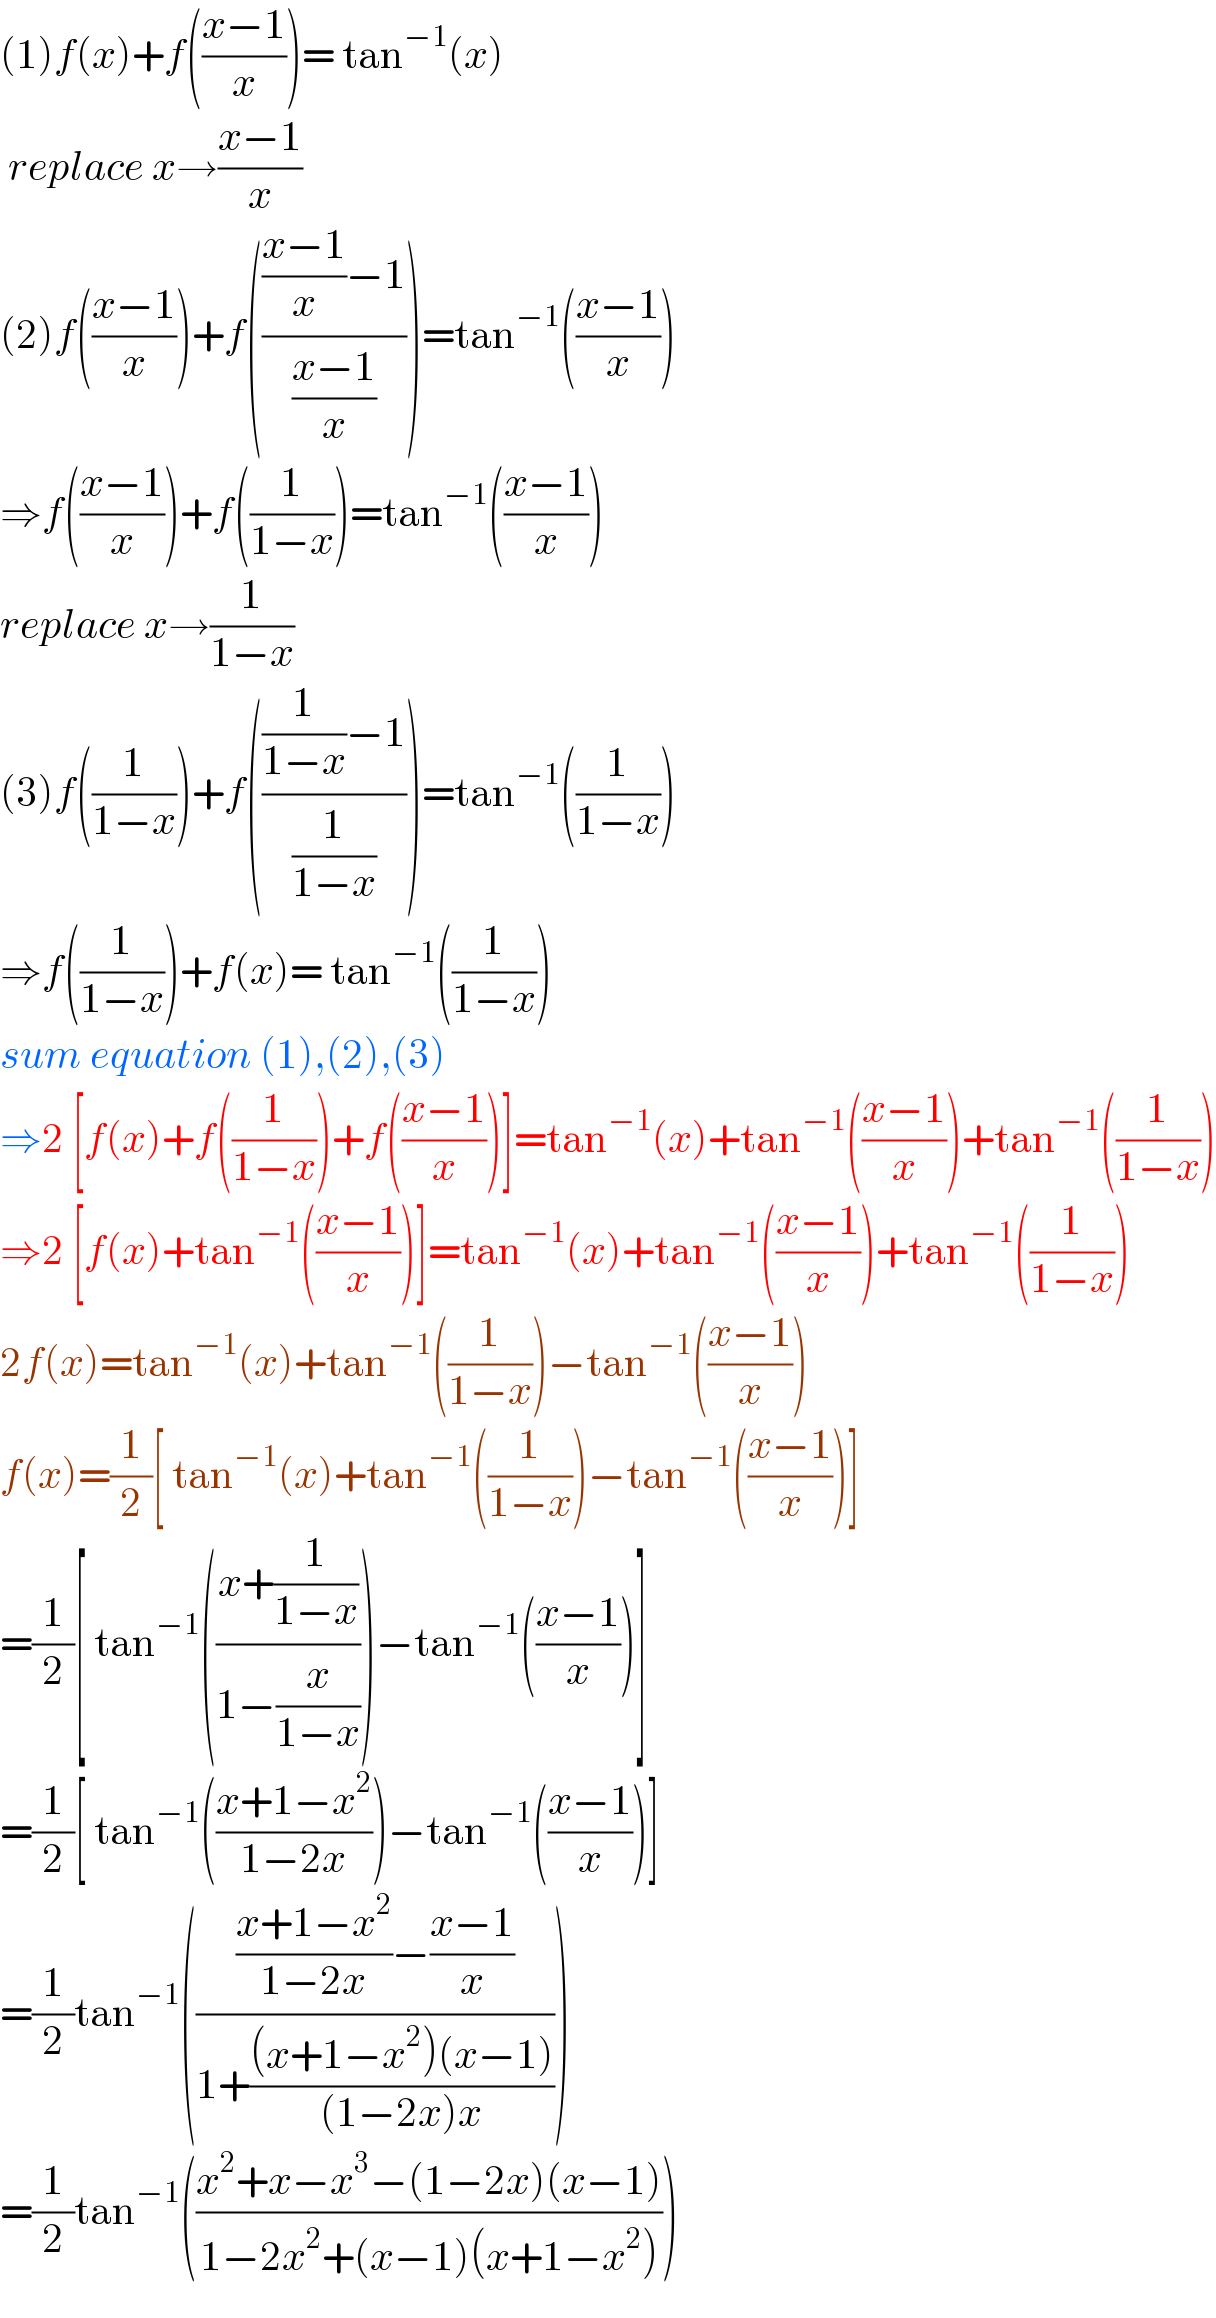 (1)f(x)+f(((x−1)/x))= tan^(−1) (x)   replace x→((x−1)/x)  (2)f(((x−1)/x))+f(((((x−1)/x)−1)/((x−1)/x)))=tan^(−1) (((x−1)/x))  ⇒f(((x−1)/x))+f((1/(1−x)))=tan^(−1) (((x−1)/x))  replace x→(1/(1−x))  (3)f((1/(1−x)))+f((((1/(1−x))−1)/(1/(1−x))))=tan^(−1) ((1/(1−x)))  ⇒f((1/(1−x)))+f(x)= tan^(−1) ((1/(1−x)))  sum equation (1),(2),(3)  ⇒2 [f(x)+f((1/(1−x)))+f(((x−1)/x))]=tan^(−1) (x)+tan^(−1) (((x−1)/x))+tan^(−1) ((1/(1−x)))  ⇒2 [f(x)+tan^(−1) (((x−1)/x))]=tan^(−1) (x)+tan^(−1) (((x−1)/x))+tan^(−1) ((1/(1−x)))  2f(x)=tan^(−1) (x)+tan^(−1) ((1/(1−x)))−tan^(−1) (((x−1)/x))  f(x)=(1/2)[ tan^(−1) (x)+tan^(−1) ((1/(1−x)))−tan^(−1) (((x−1)/x))]   =(1/2)[ tan^(−1) (((x+(1/(1−x)))/(1−(x/(1−x)))))−tan^(−1) (((x−1)/x))]  =(1/2)[ tan^(−1) (((x+1−x^2 )/(1−2x)))−tan^(−1) (((x−1)/x))]  =(1/2)tan^(−1) (((((x+1−x^2 )/(1−2x))−((x−1)/x))/(1+(((x+1−x^2 )(x−1))/((1−2x)x)))))  =(1/2)tan^(−1) (((x^2 +x−x^3 −(1−2x)(x−1))/(1−2x^2 +(x−1)(x+1−x^2 ))))  